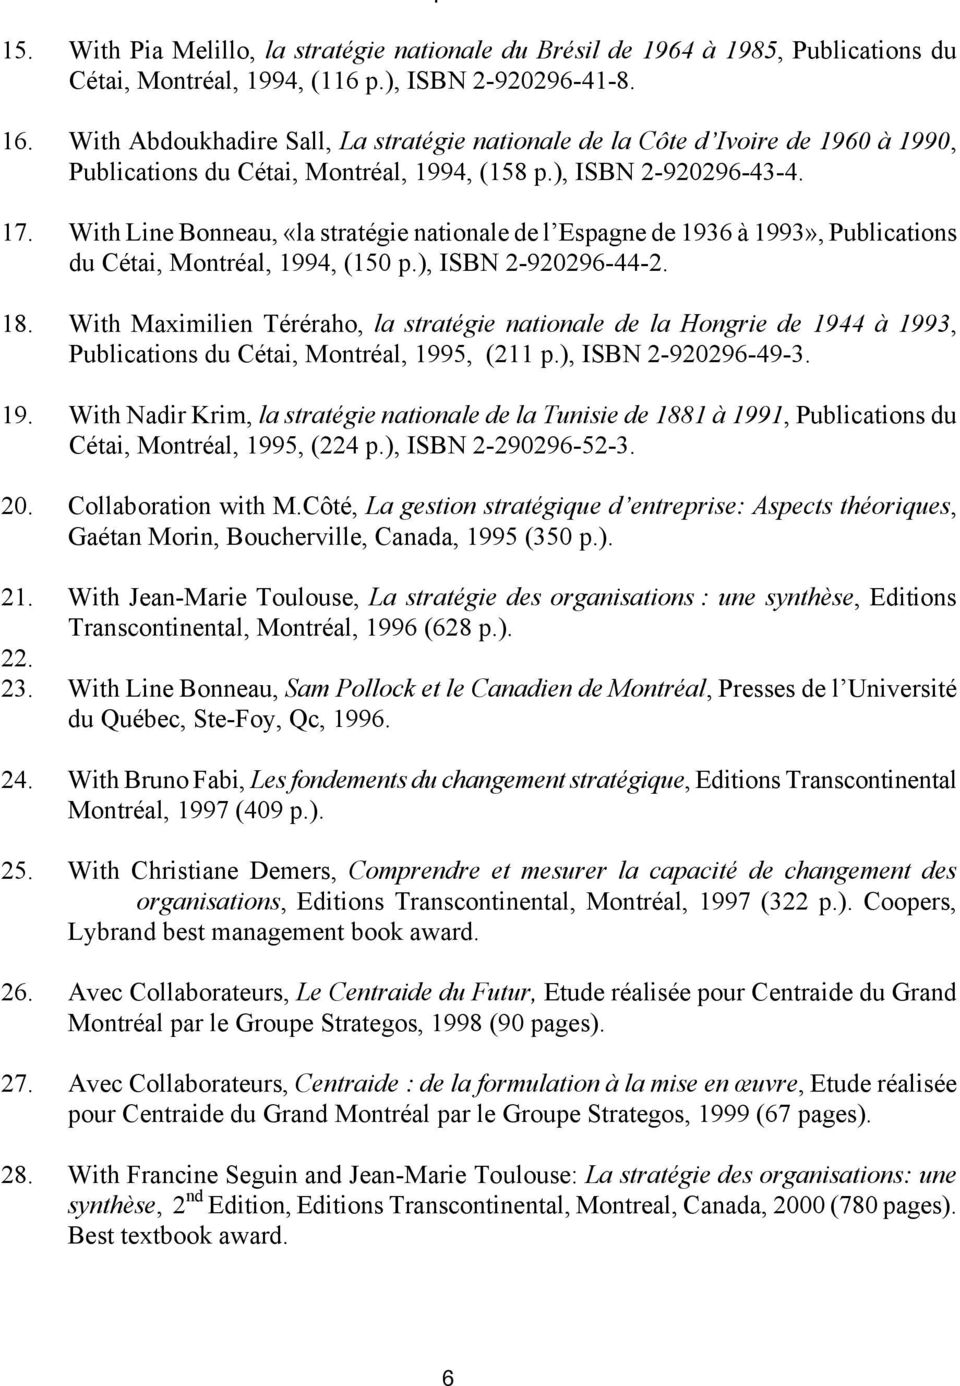 With Line Bonneau, «la stratégie nationale de l Espagne de 1936 à 1993», Publications du Cétai, Montréal, 1994, (150 p.), ISBN 2-920296-44-2. 18.